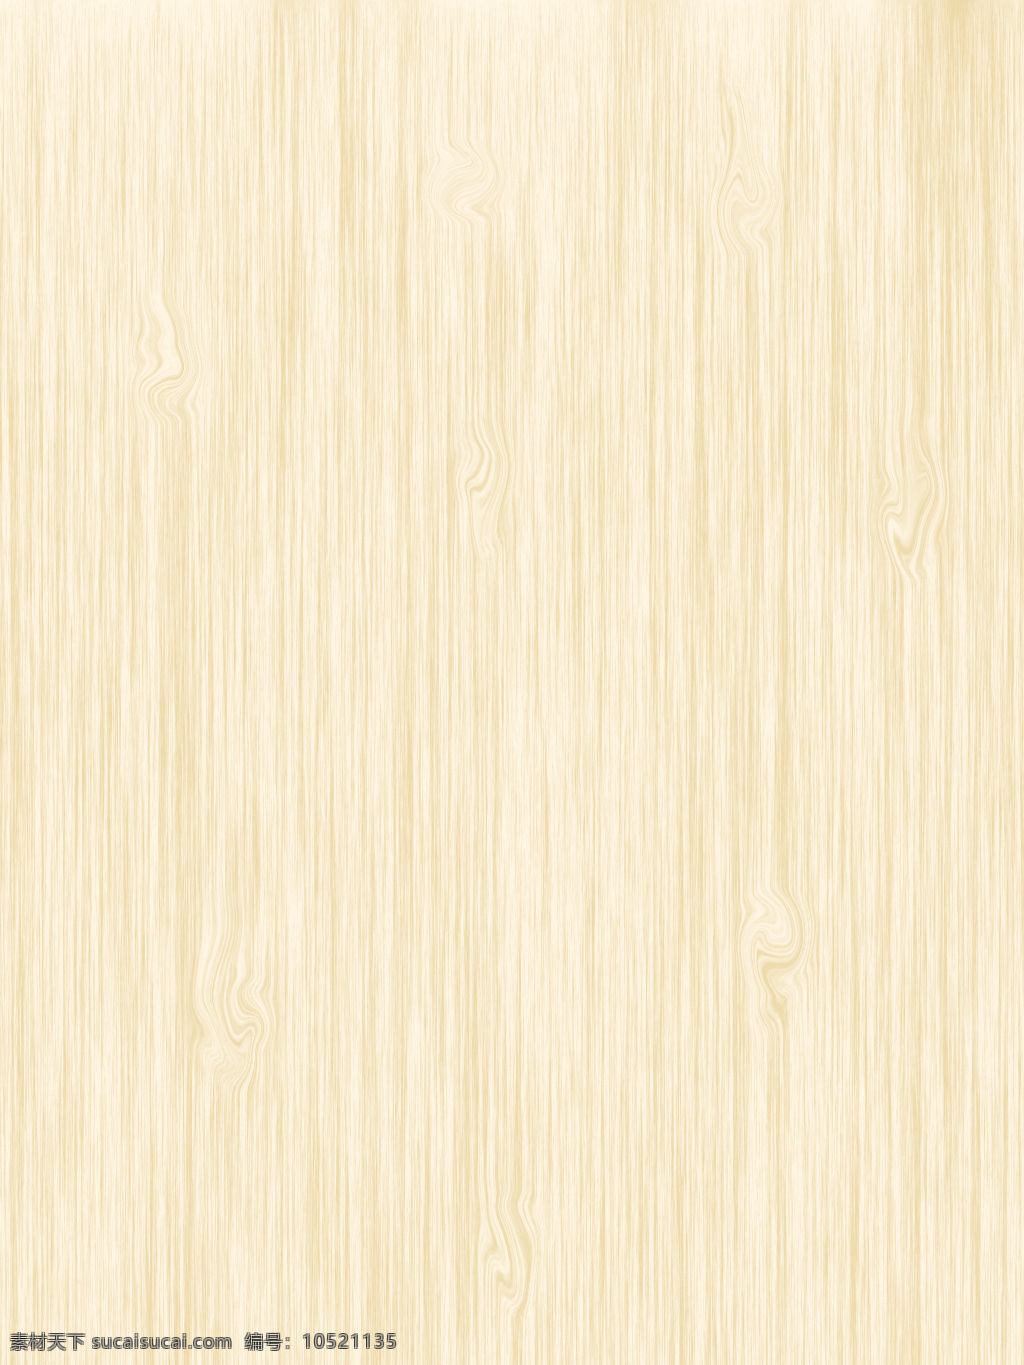 木纹 木头 浅色 棕色 灰色 条纹 材质 底纹 纹路 木色 木头材质 木 建筑园林